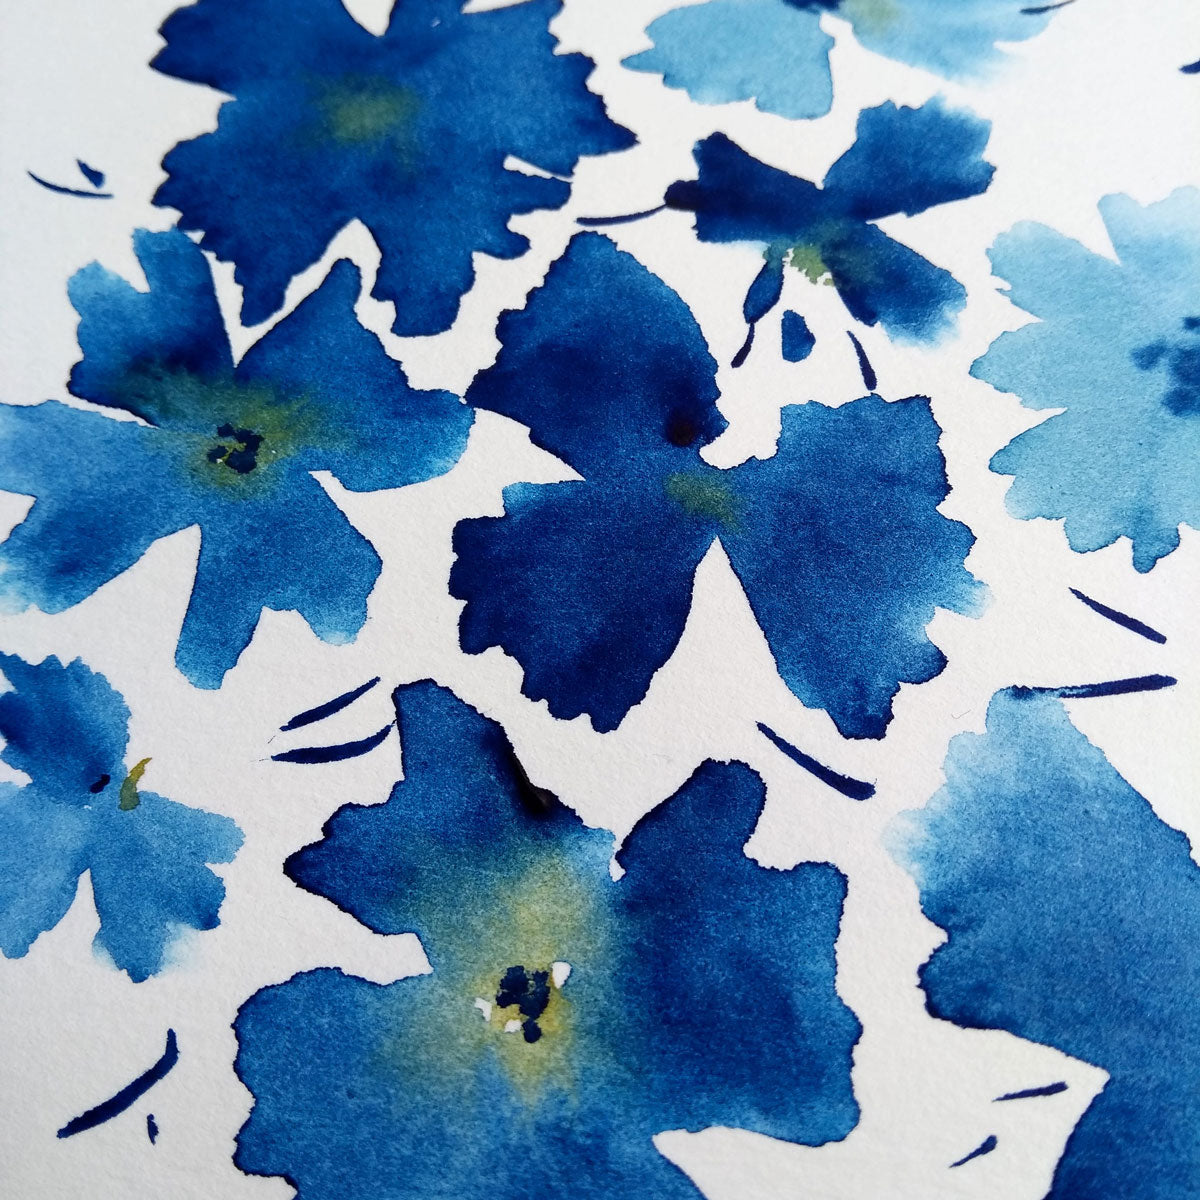 Five Patch Design blue floral watercolor